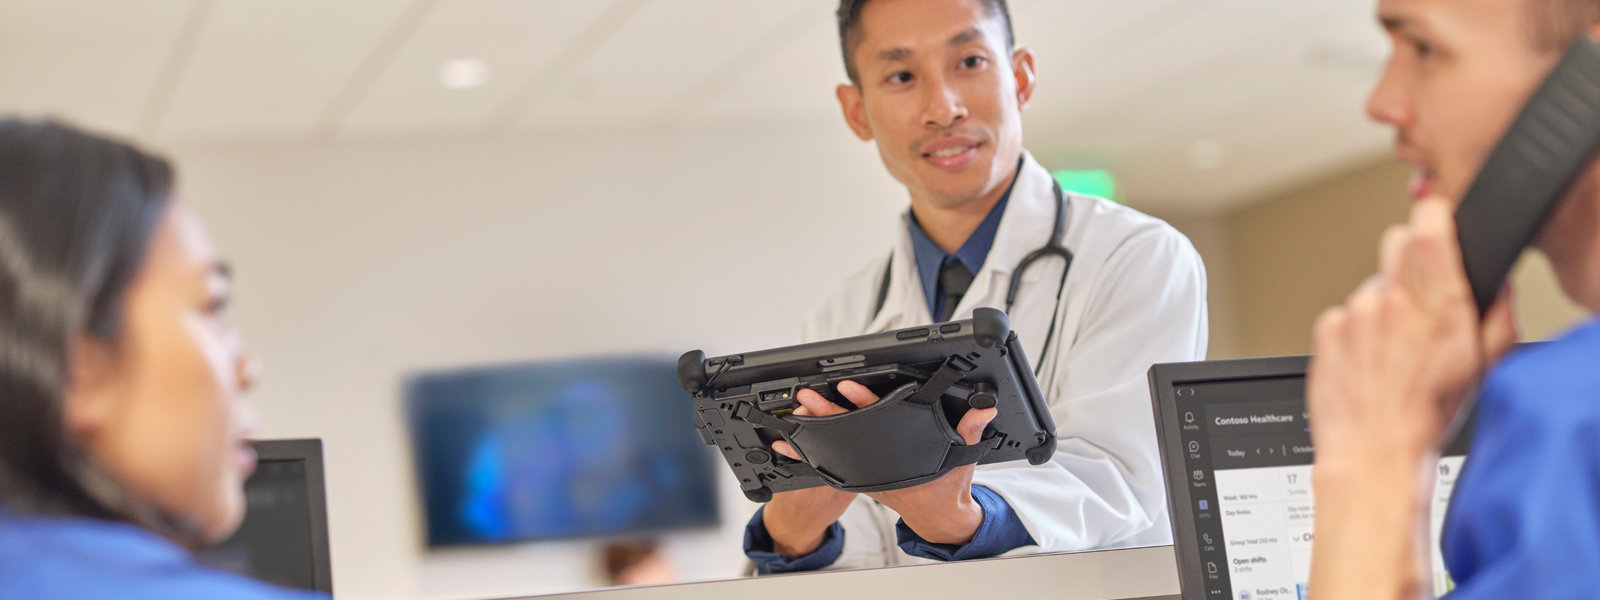 En læge holder en Surface Pro og taler med to sygeplejersker